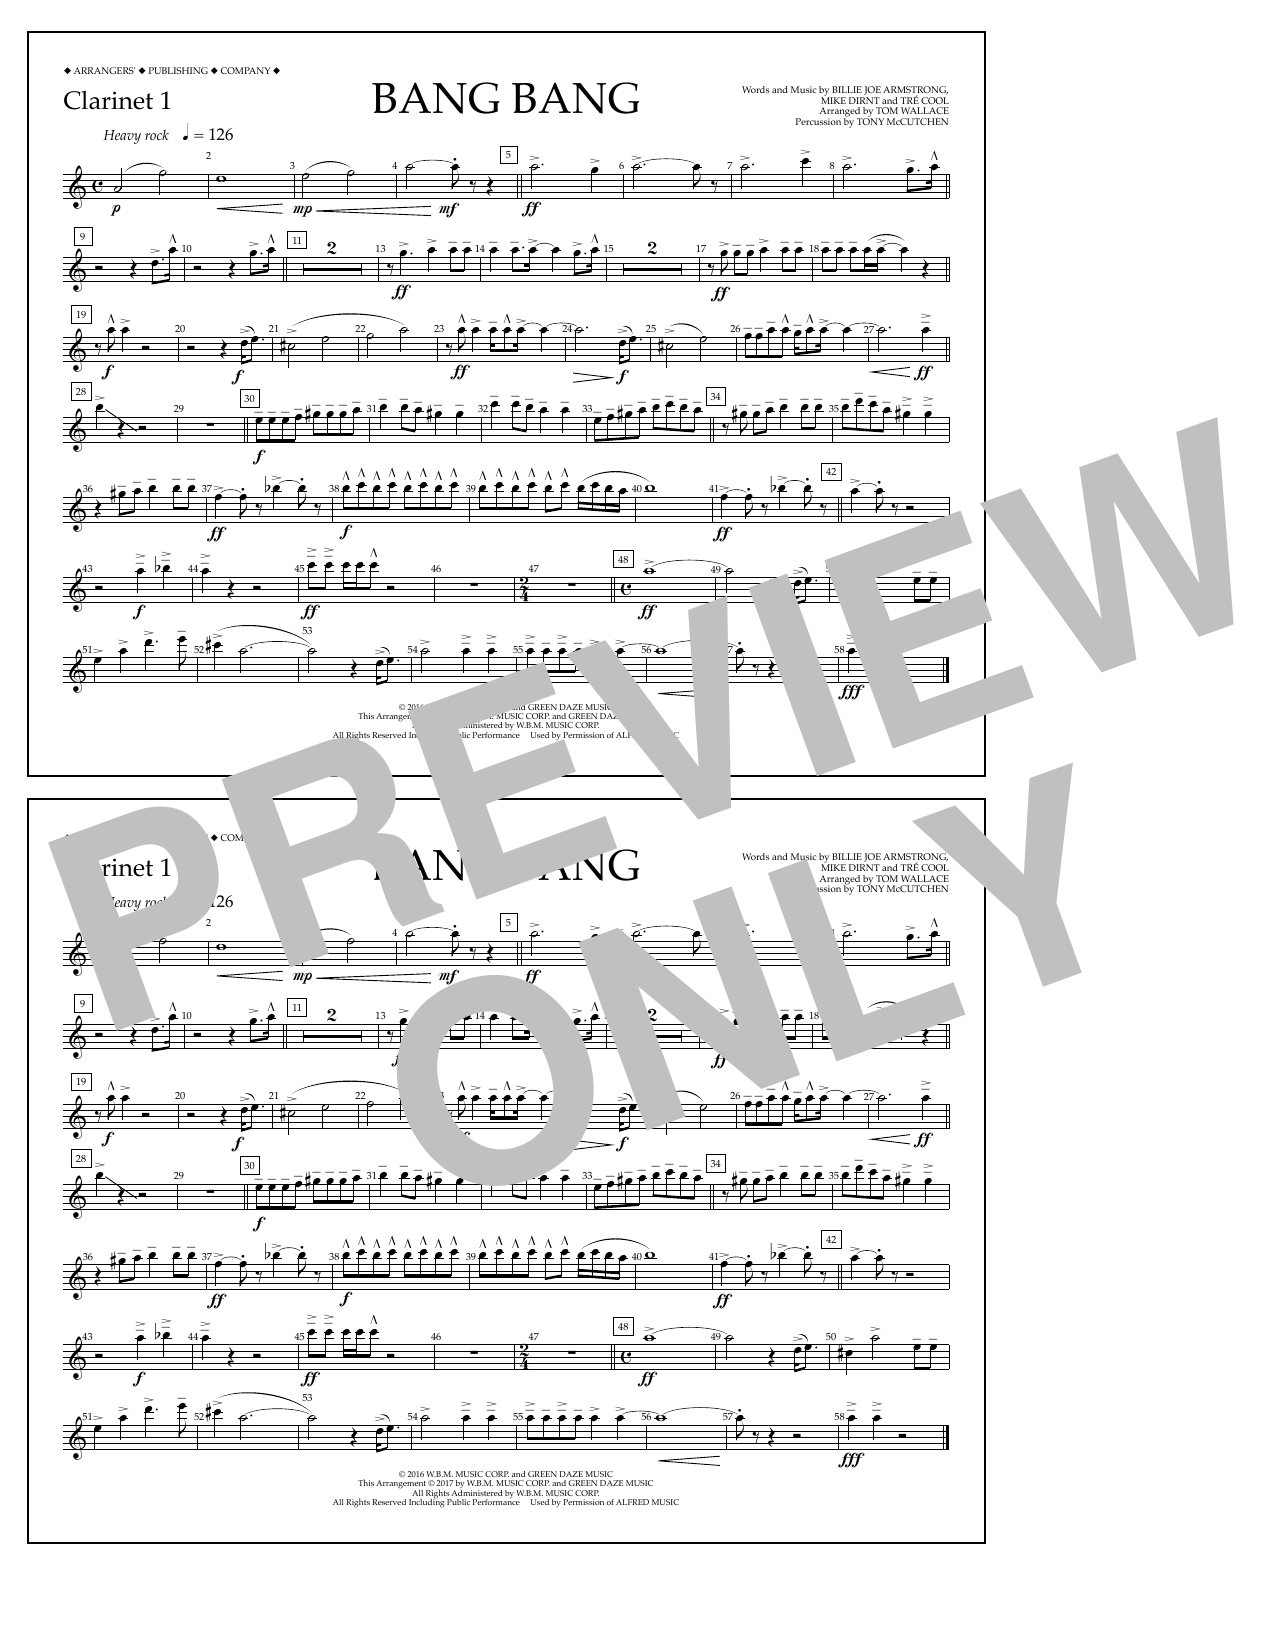 Tom Wallace Bang Bang - Clarinet 1 Sheet Music Notes & Chords for Marching Band - Download or Print PDF